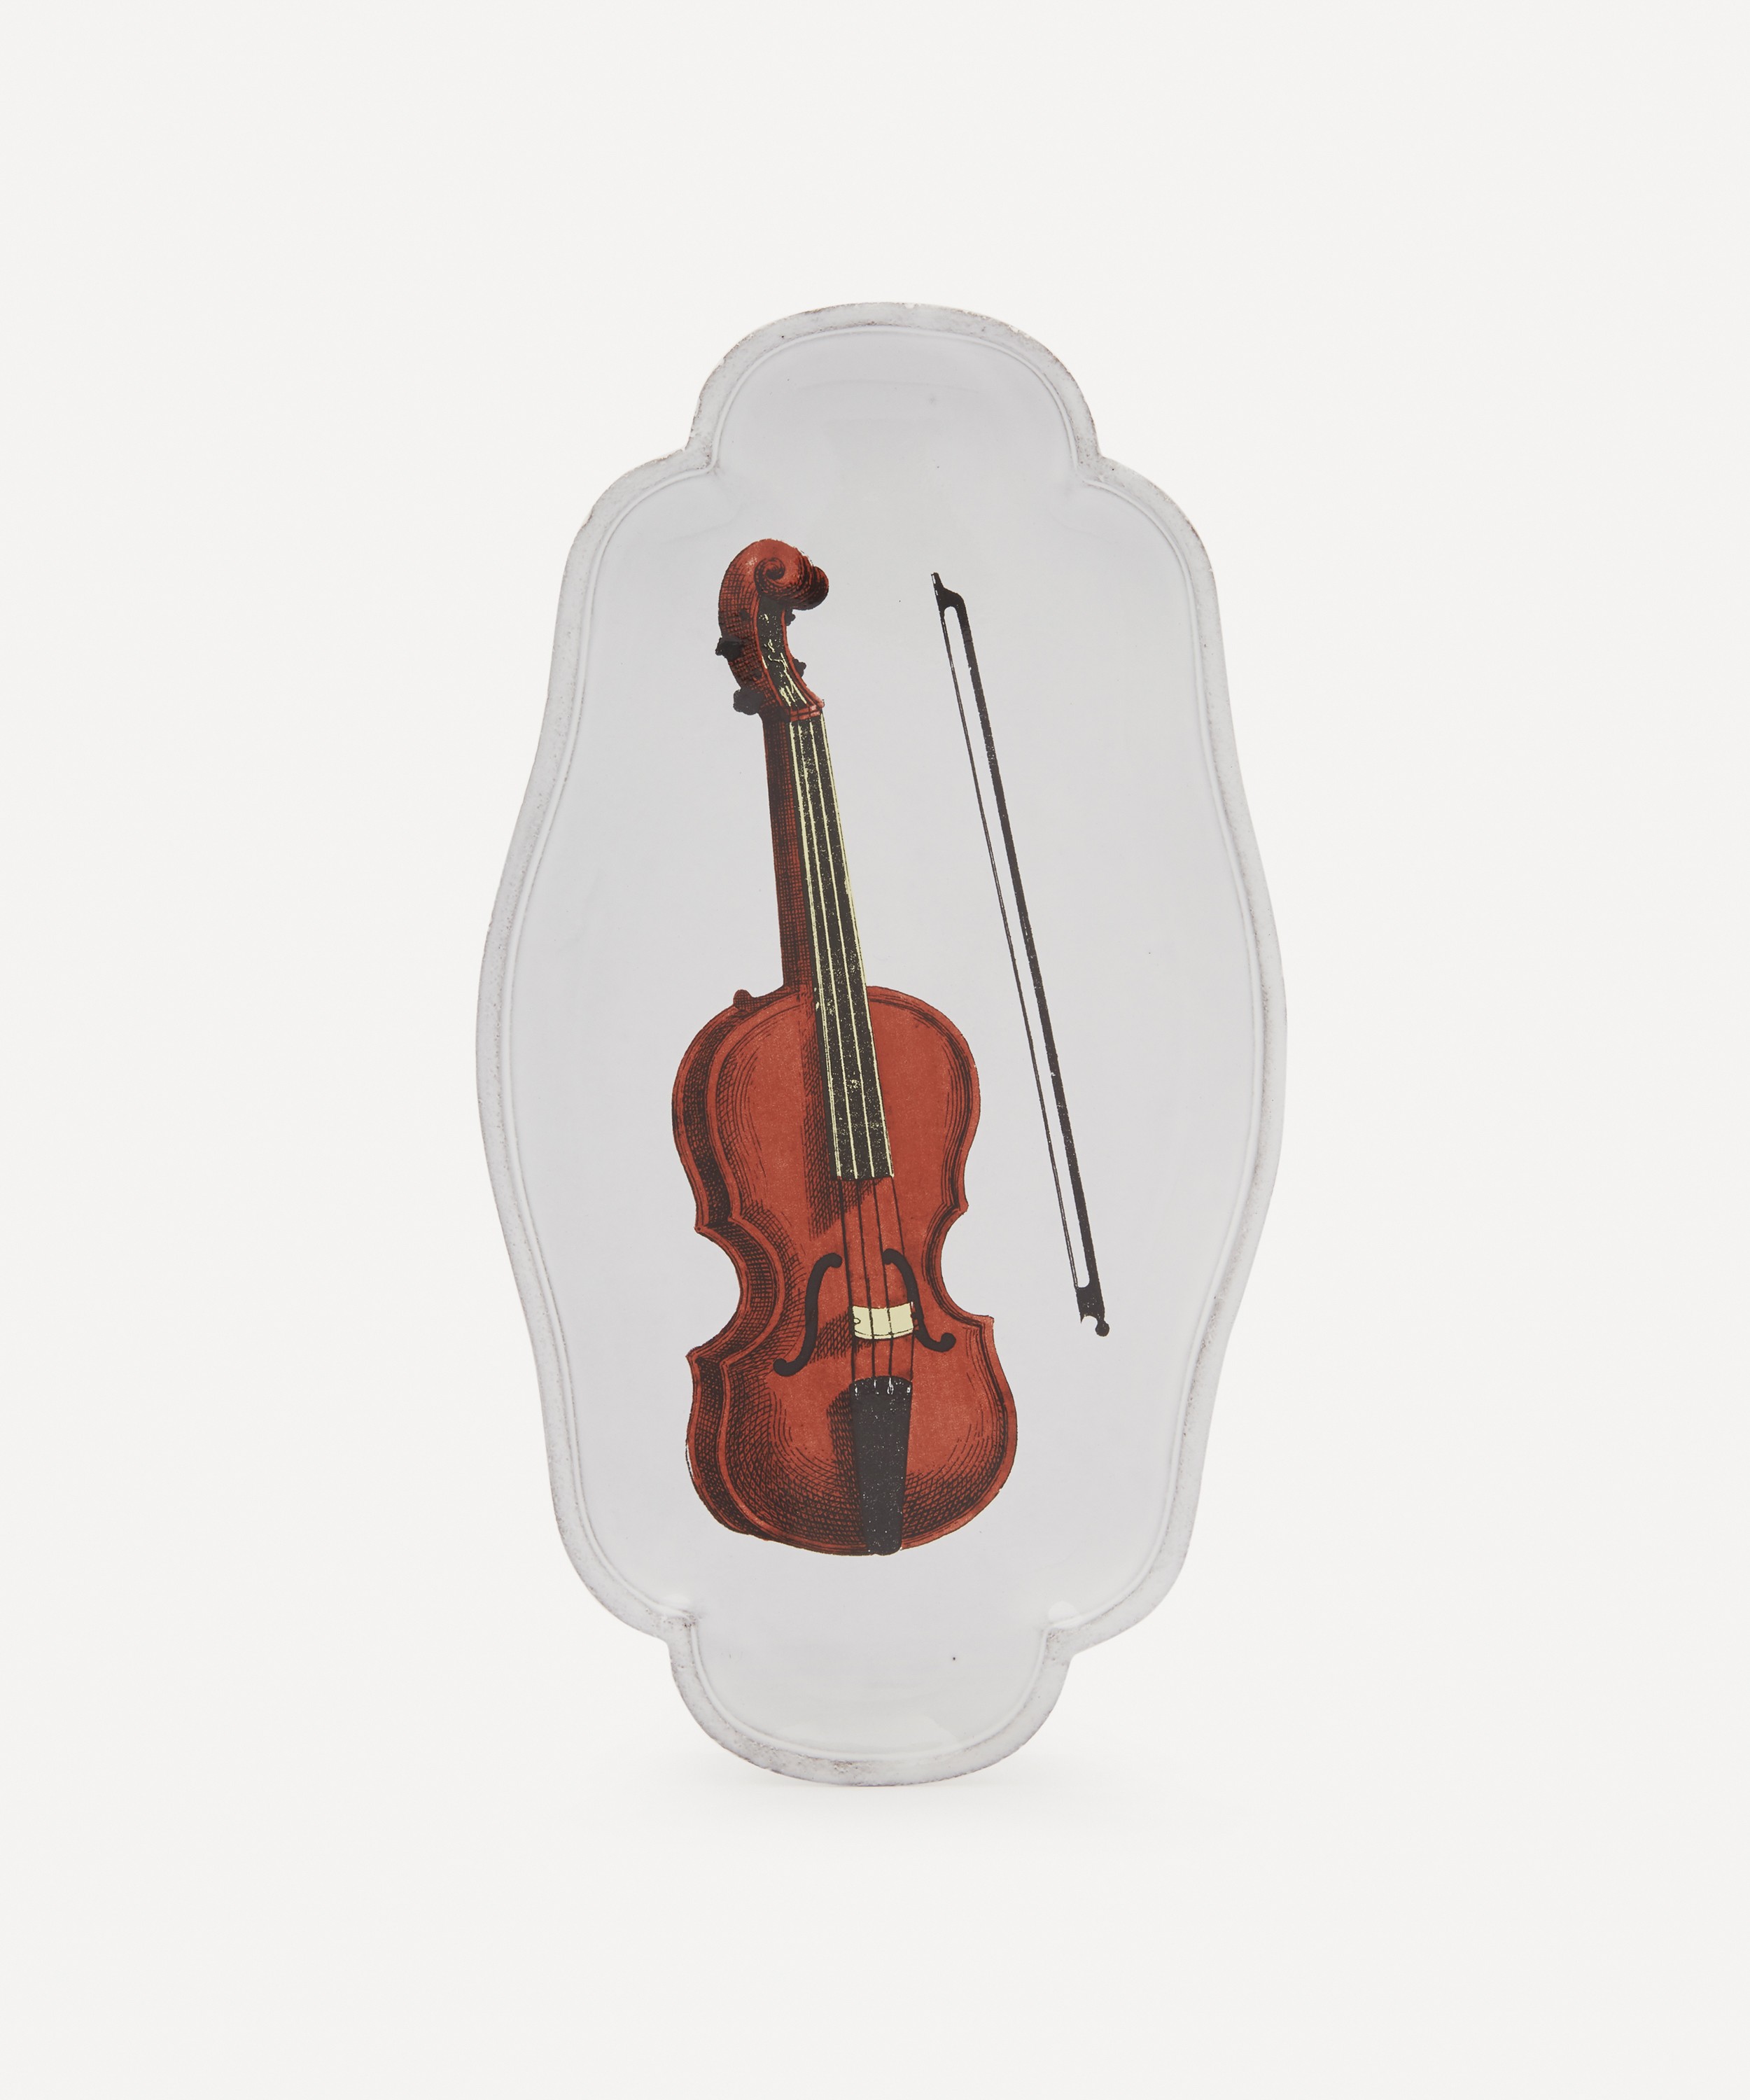 Astier de Villatte - Violin Platter